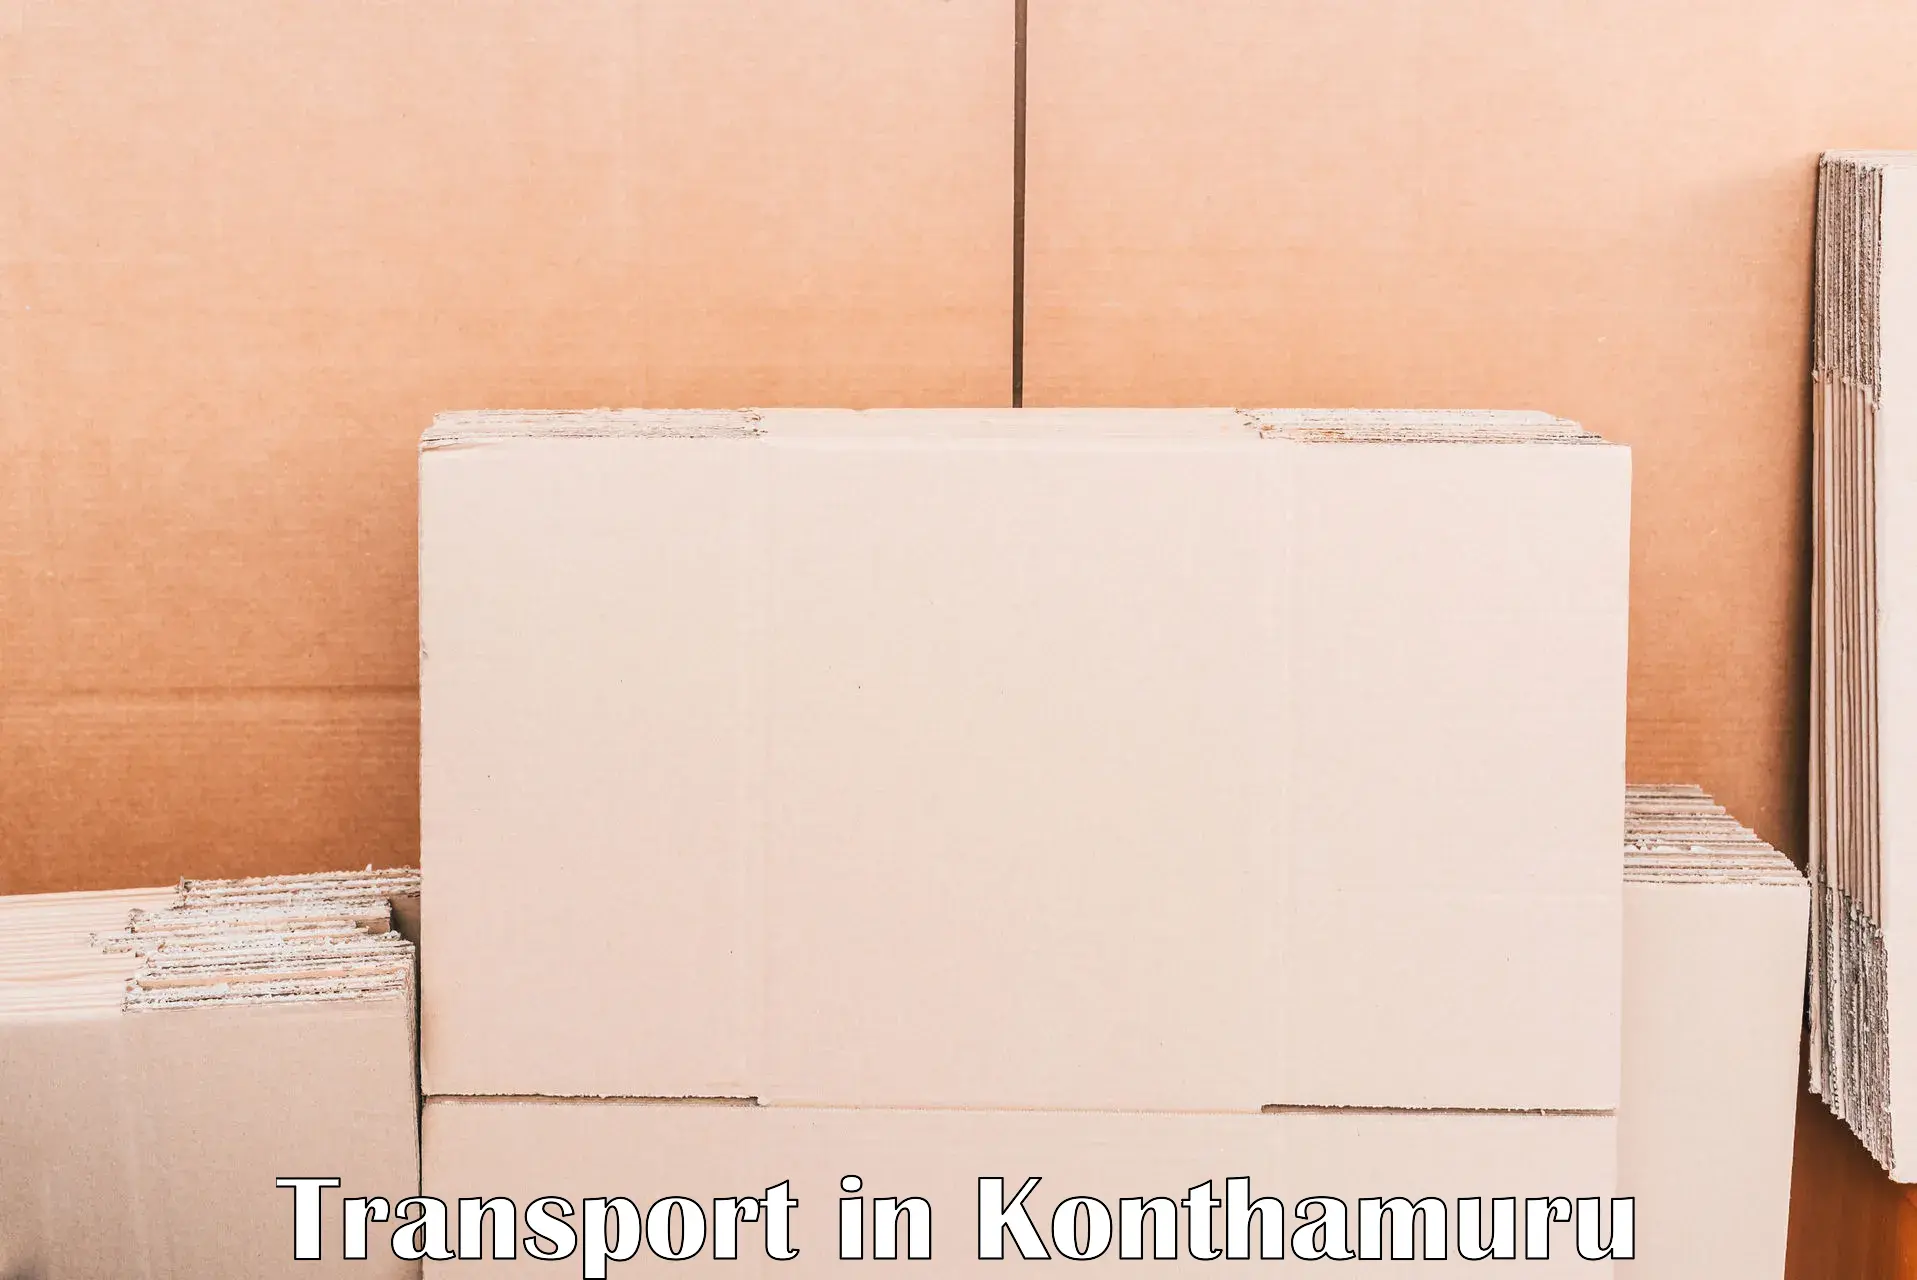 Logistics transportation services in Konthamuru